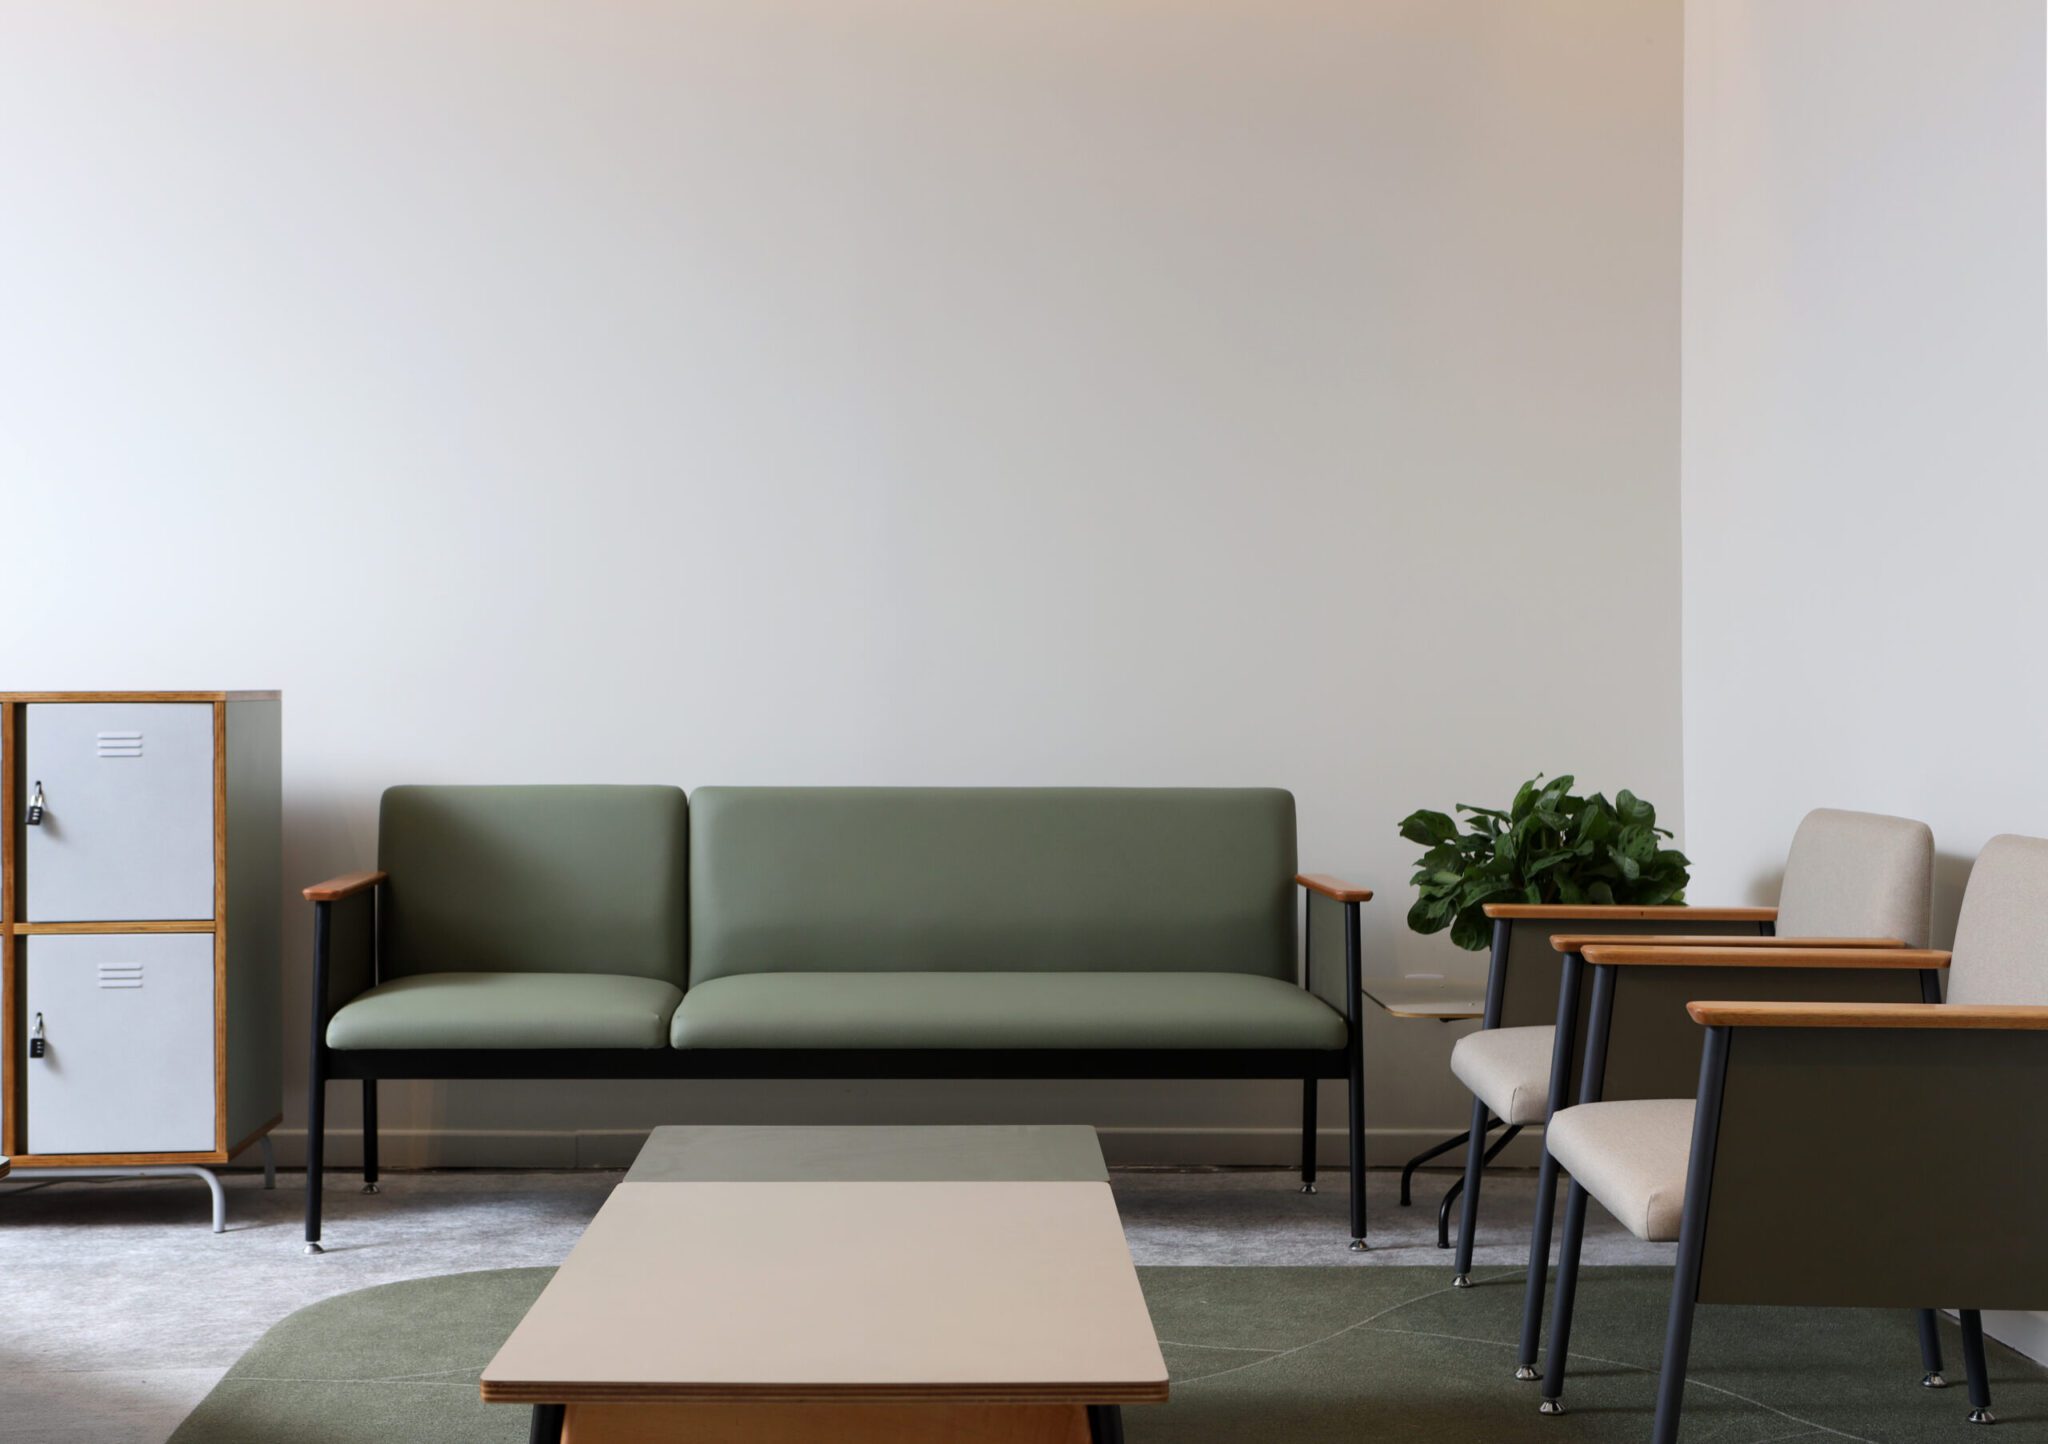 Estande da SP-Arte com um sofá, duas poltronas, uma planta lateral e uma mesa de centro sobre um tapete verde